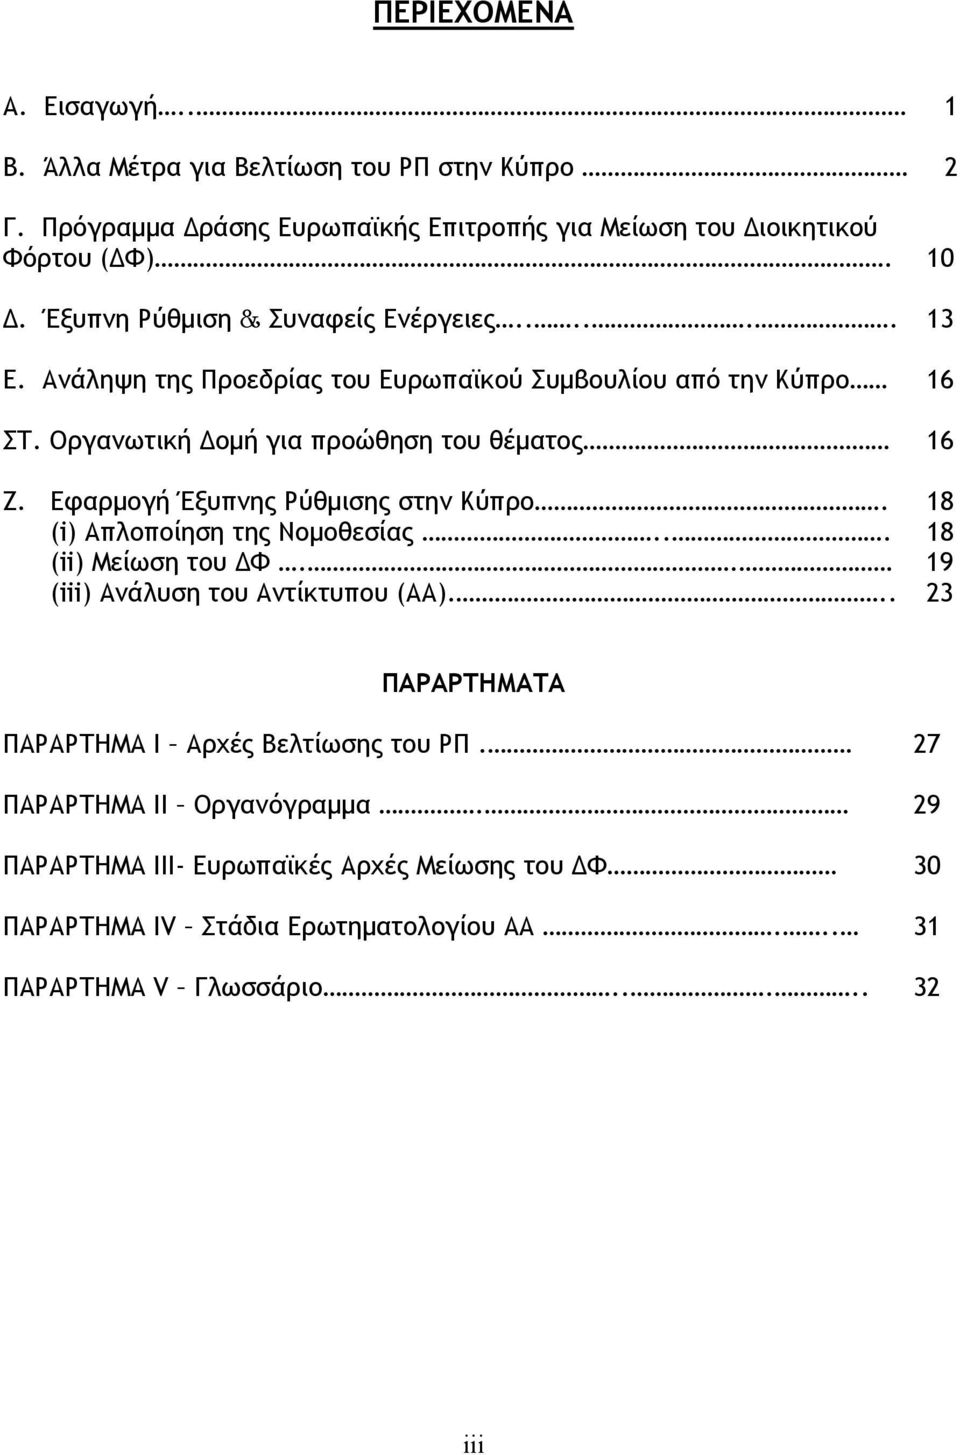 Εφαρμογή Έξυπνης Ρύθμισης στην Κύπρο. (i) Απλοποίηση της Νομοθεσίας... 18 18 (ii) Μείωση του ΔΦ.. 19 (iii) Ανάλυση του Αντίκτυπου (ΑΑ).